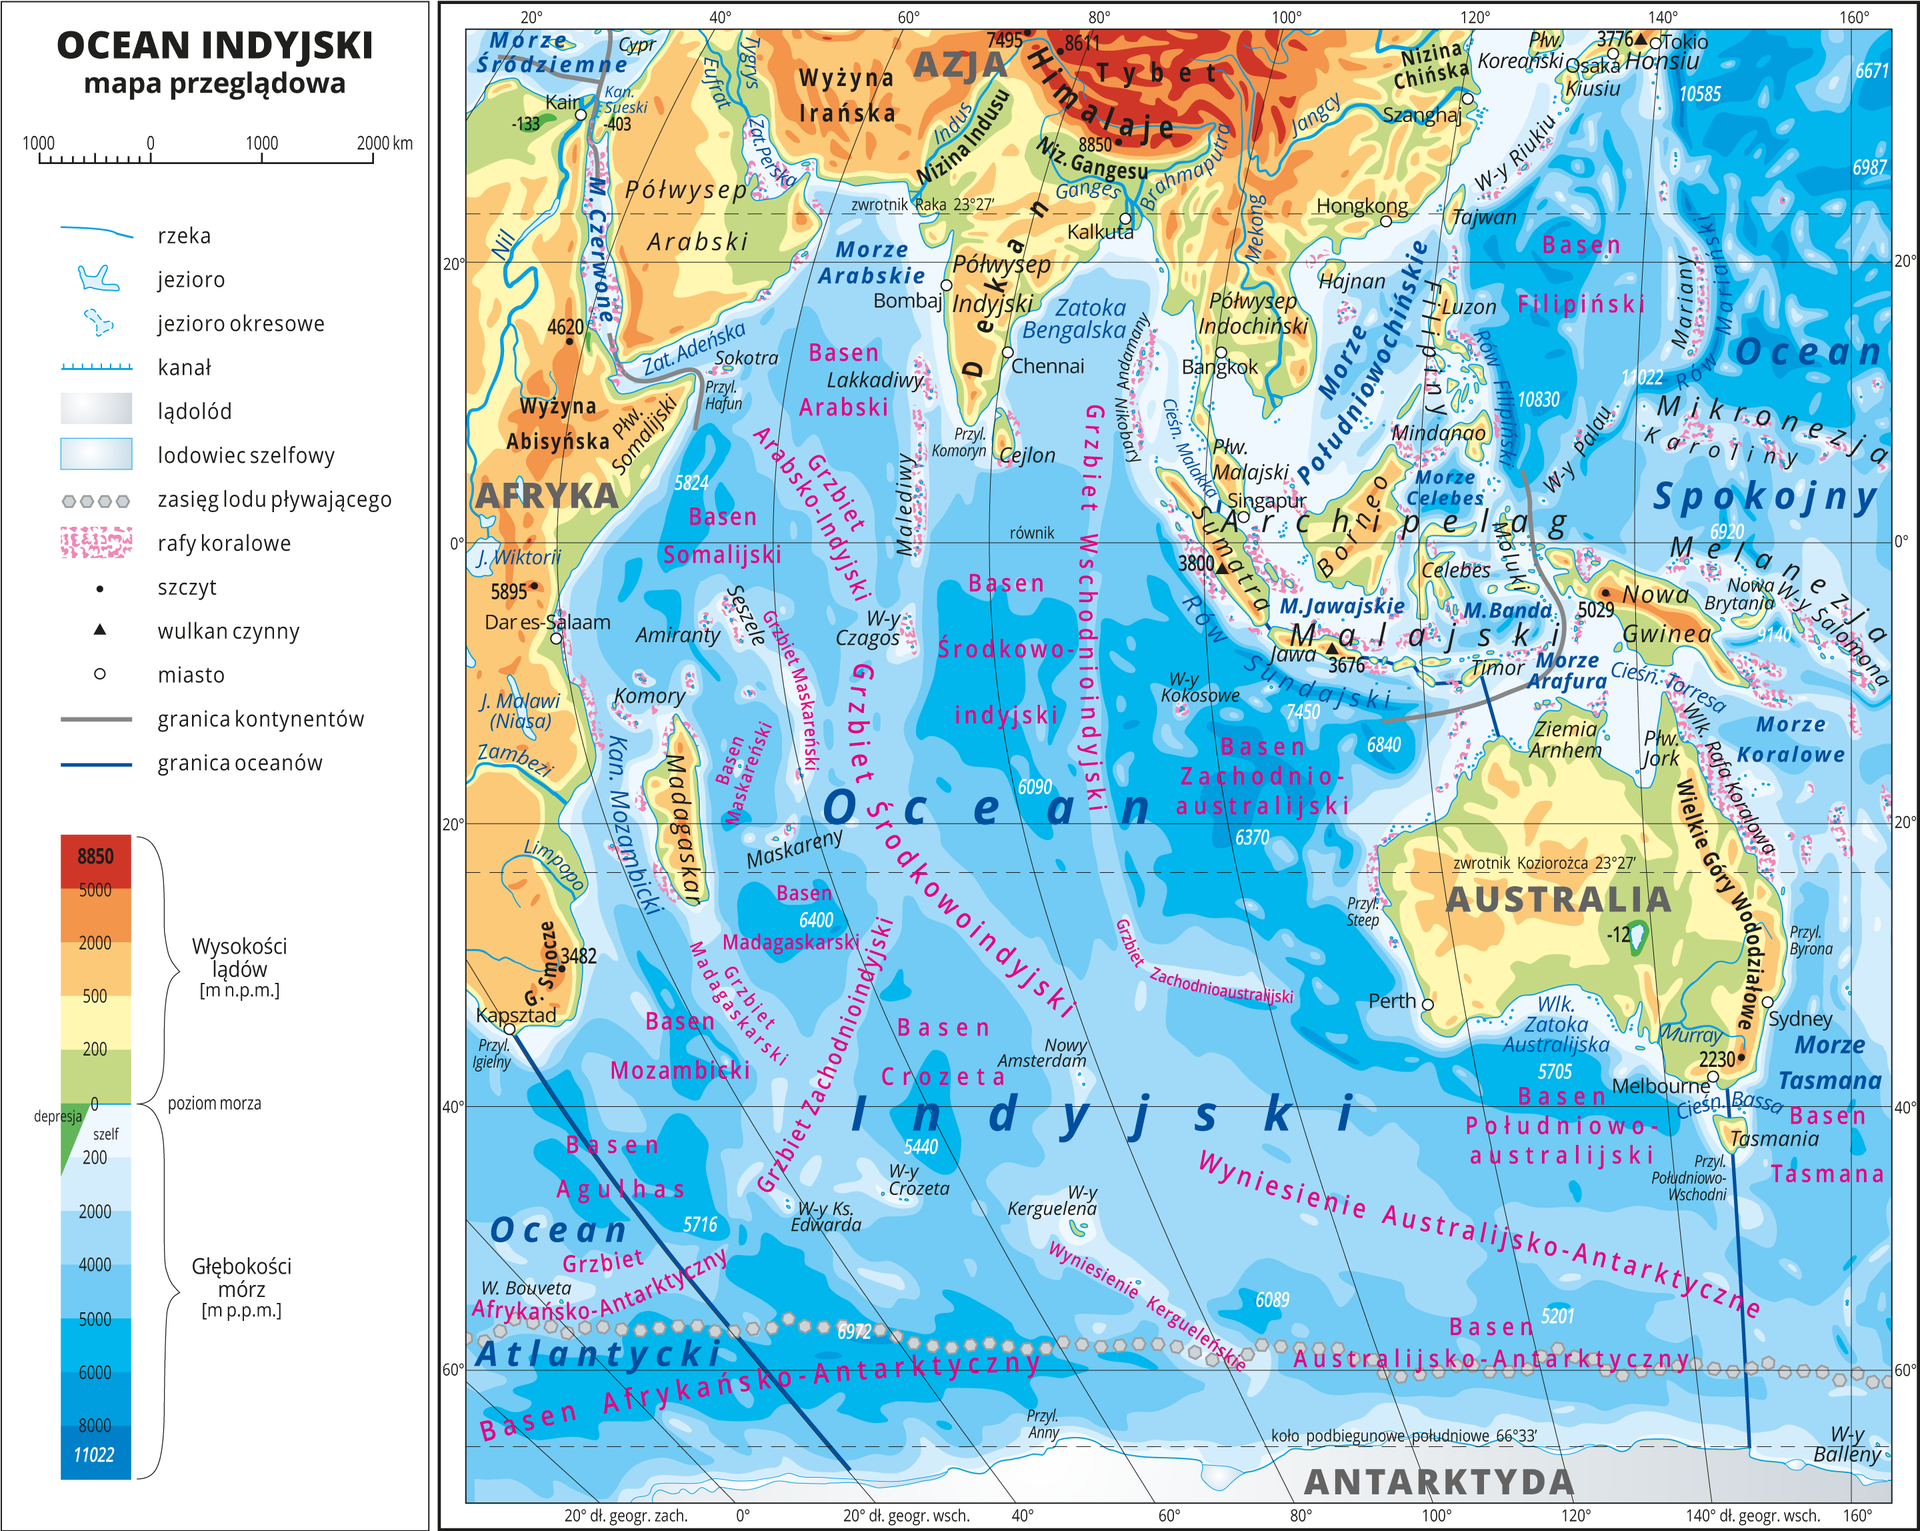 Ilustracja przedstawia mapę przeglądową Oceanu Indyjskiego. W obrębie lądów występują obszary w kolorze zielonym, żółtym, pomarańczowym i czerwonym. Morza zaznaczono sześcioma odcieniami koloru niebieskiego i opisano głębokości. Ciemniejszy kolor oznacza większą głębokość. W obrębie wód przeprowadzono granice między oceanami. Na mapie opisano nazwy kontynentów, wysp, głównych pasm górskich, morza i zatoki. Oznaczono i opisano największe miasta. Mapa pokryta jest równoleżnikami i południkami. Dookoła mapy w białej ramce opisano współrzędne geograficzne co dwadzieścia stopni. W legendzie umieszczono i opisano znaki użyte na mapie.